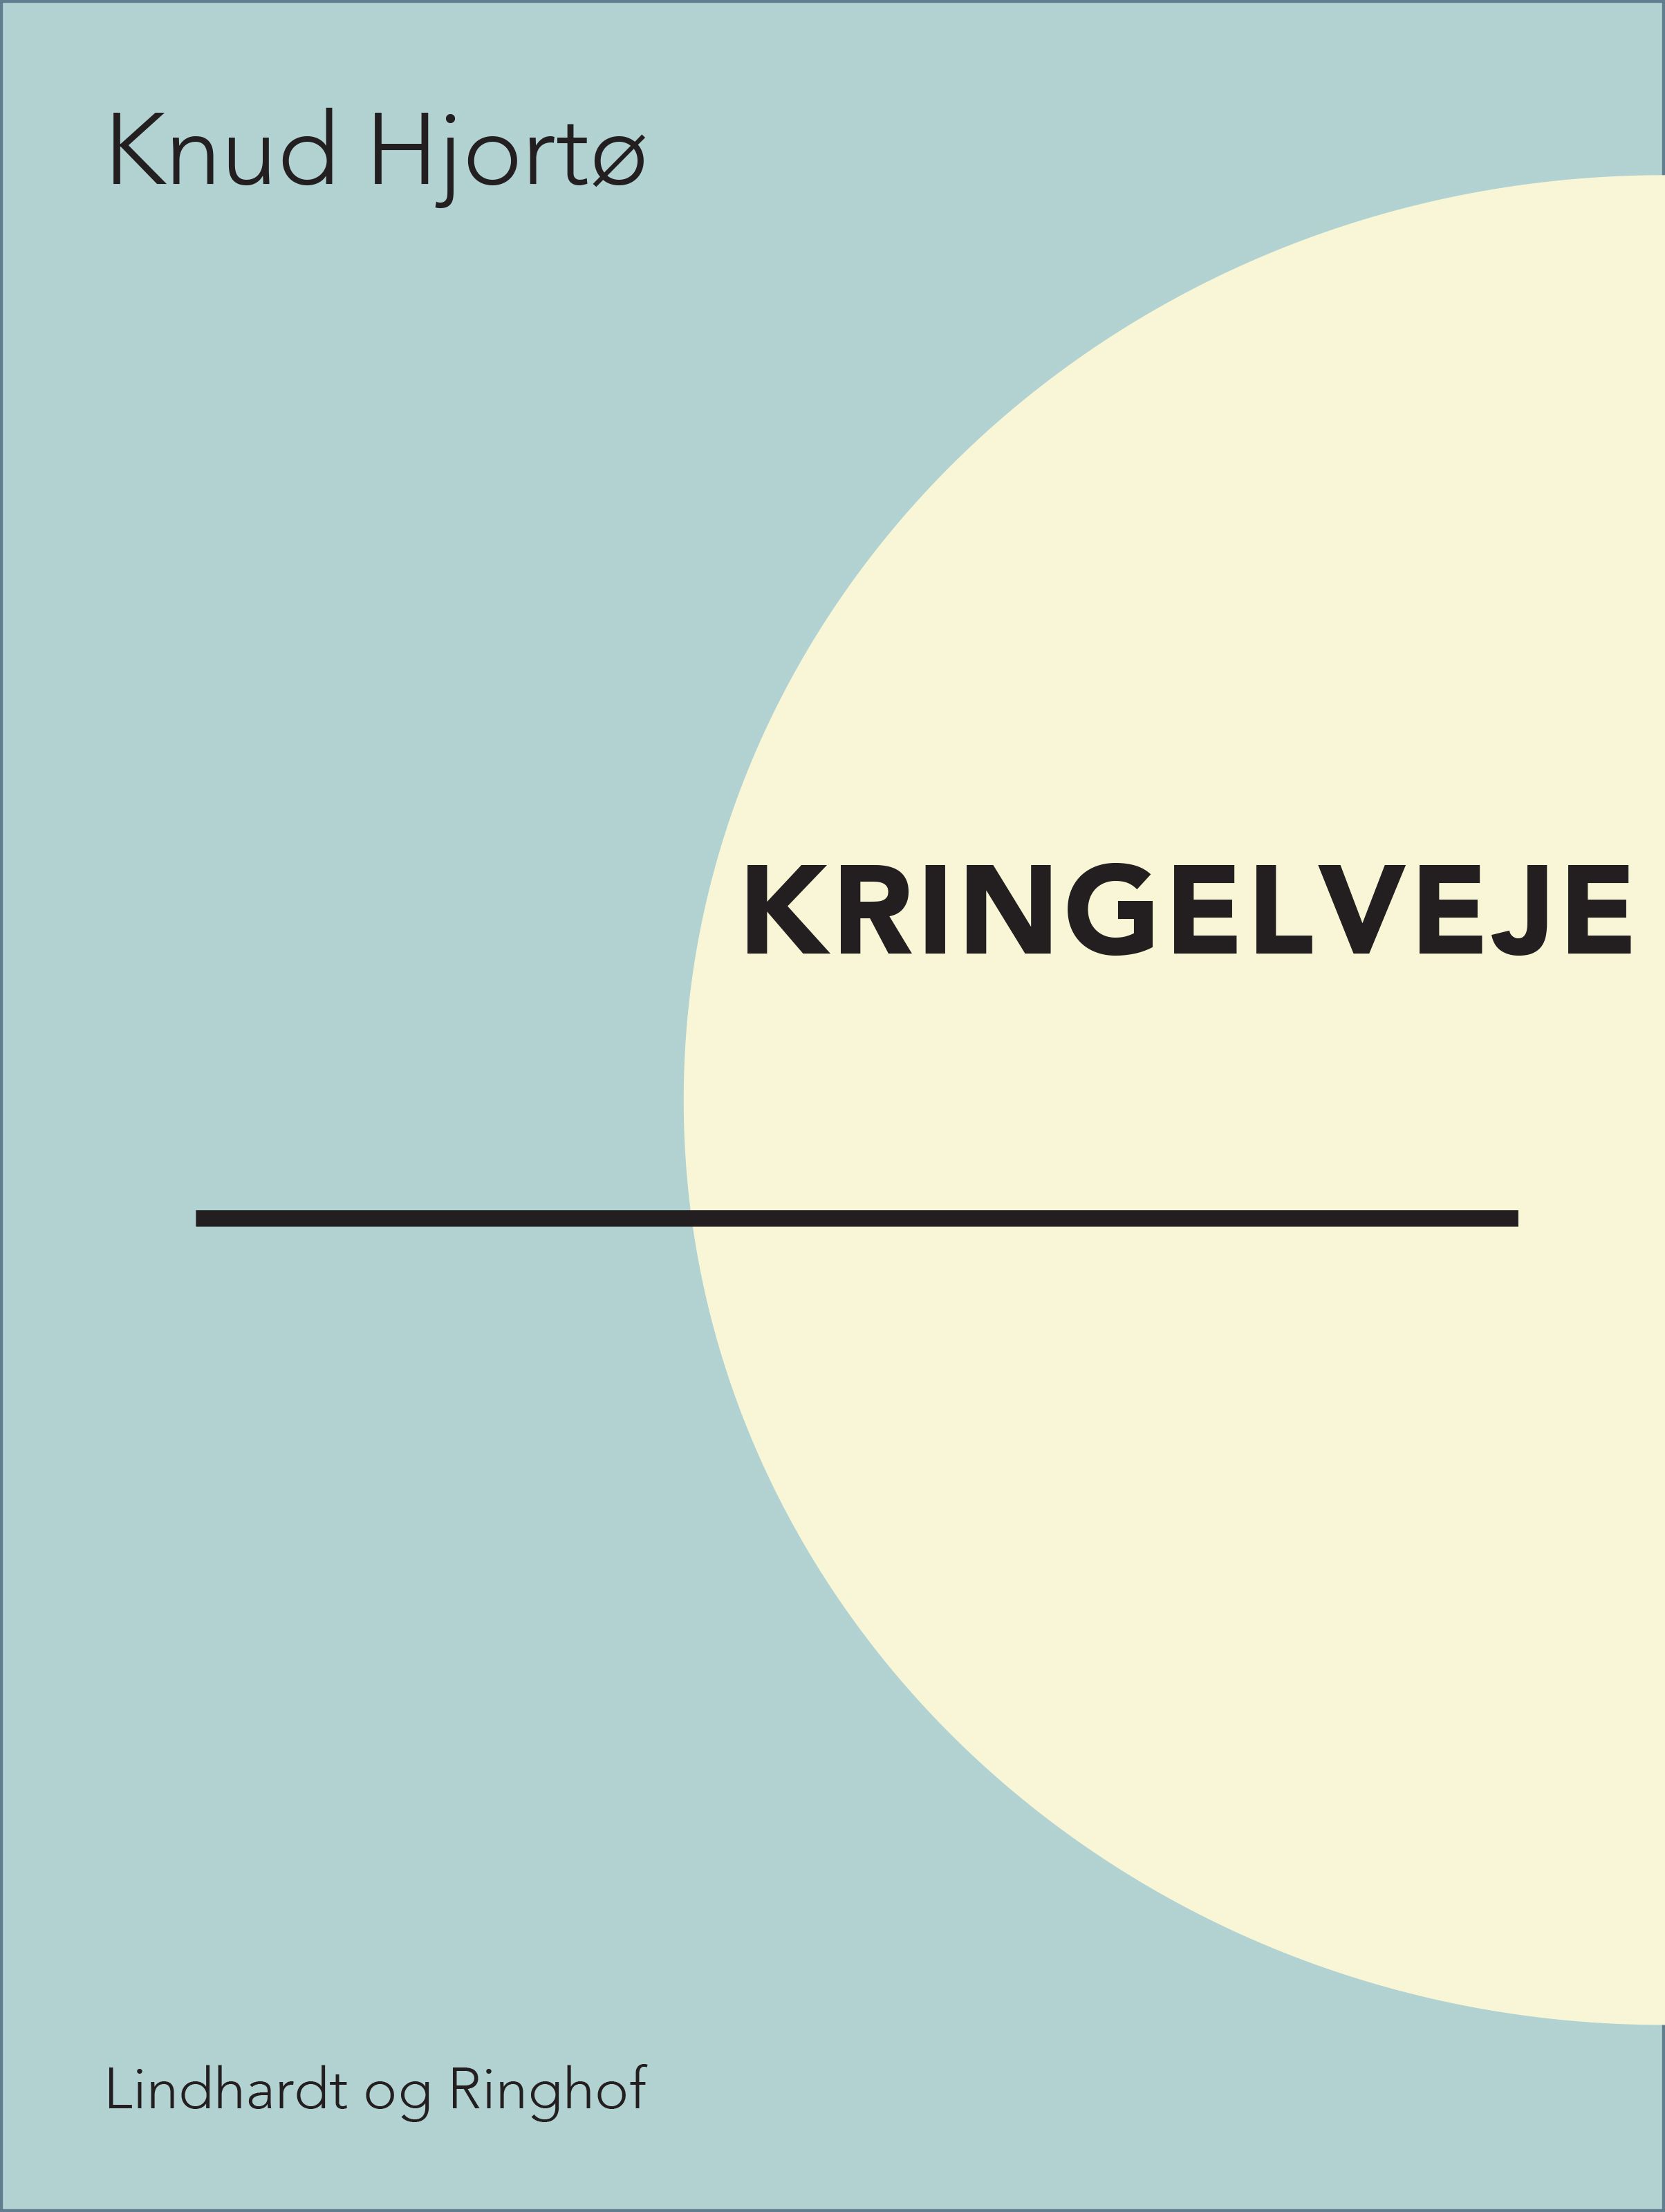 Kringelveje, e-bok av Knud Hjortø